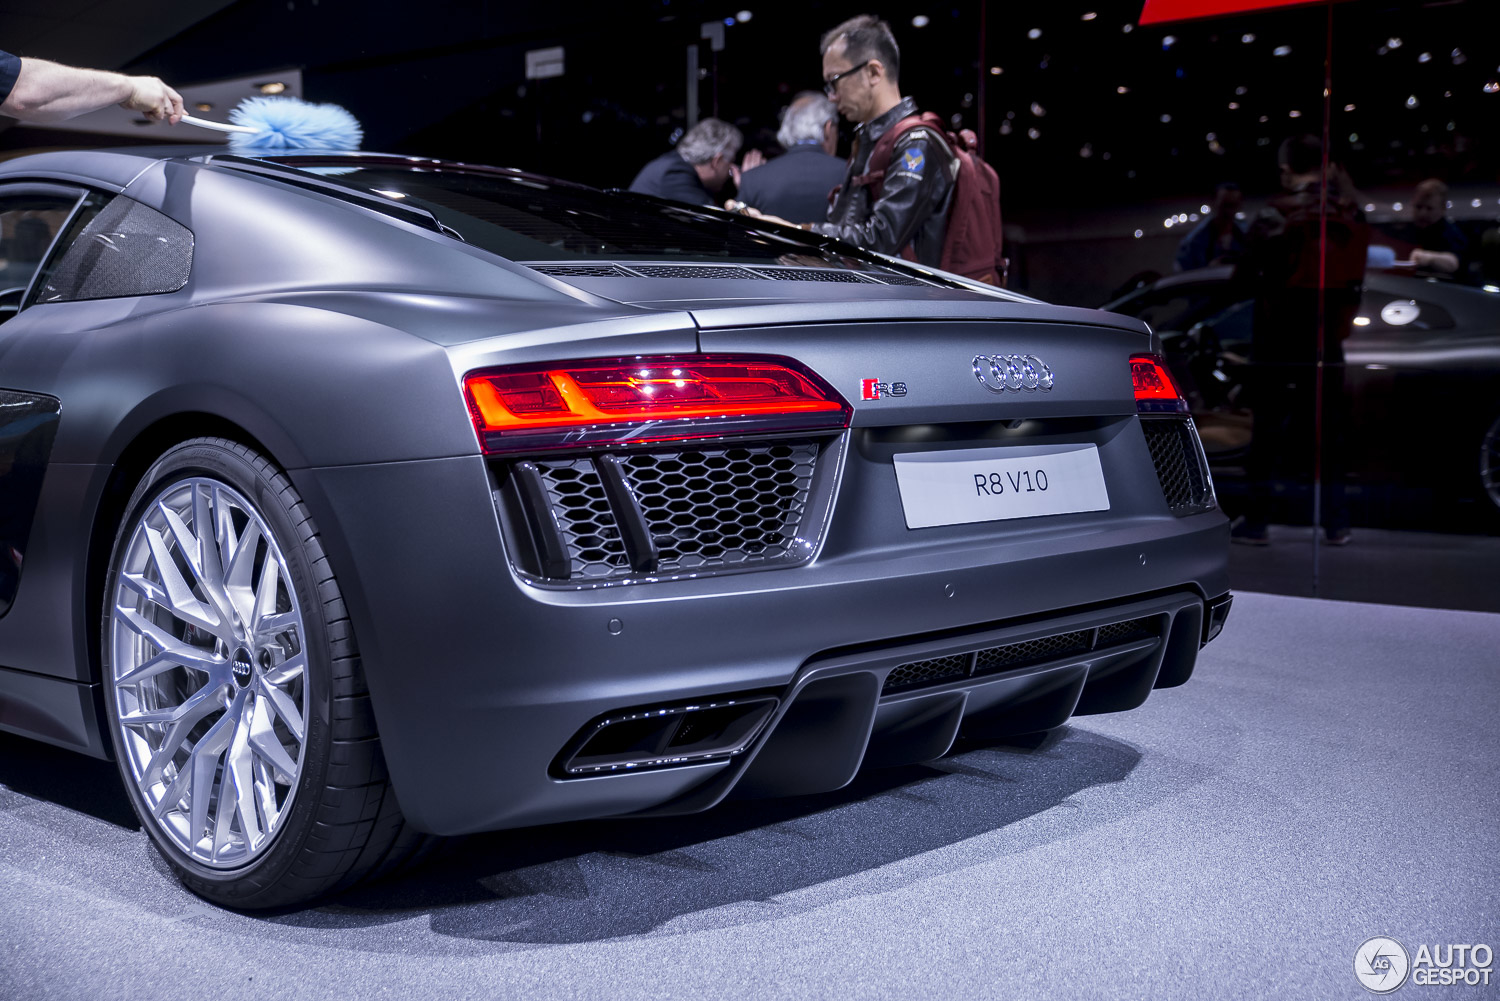 Genève 2015: de nieuwe Audi R8 